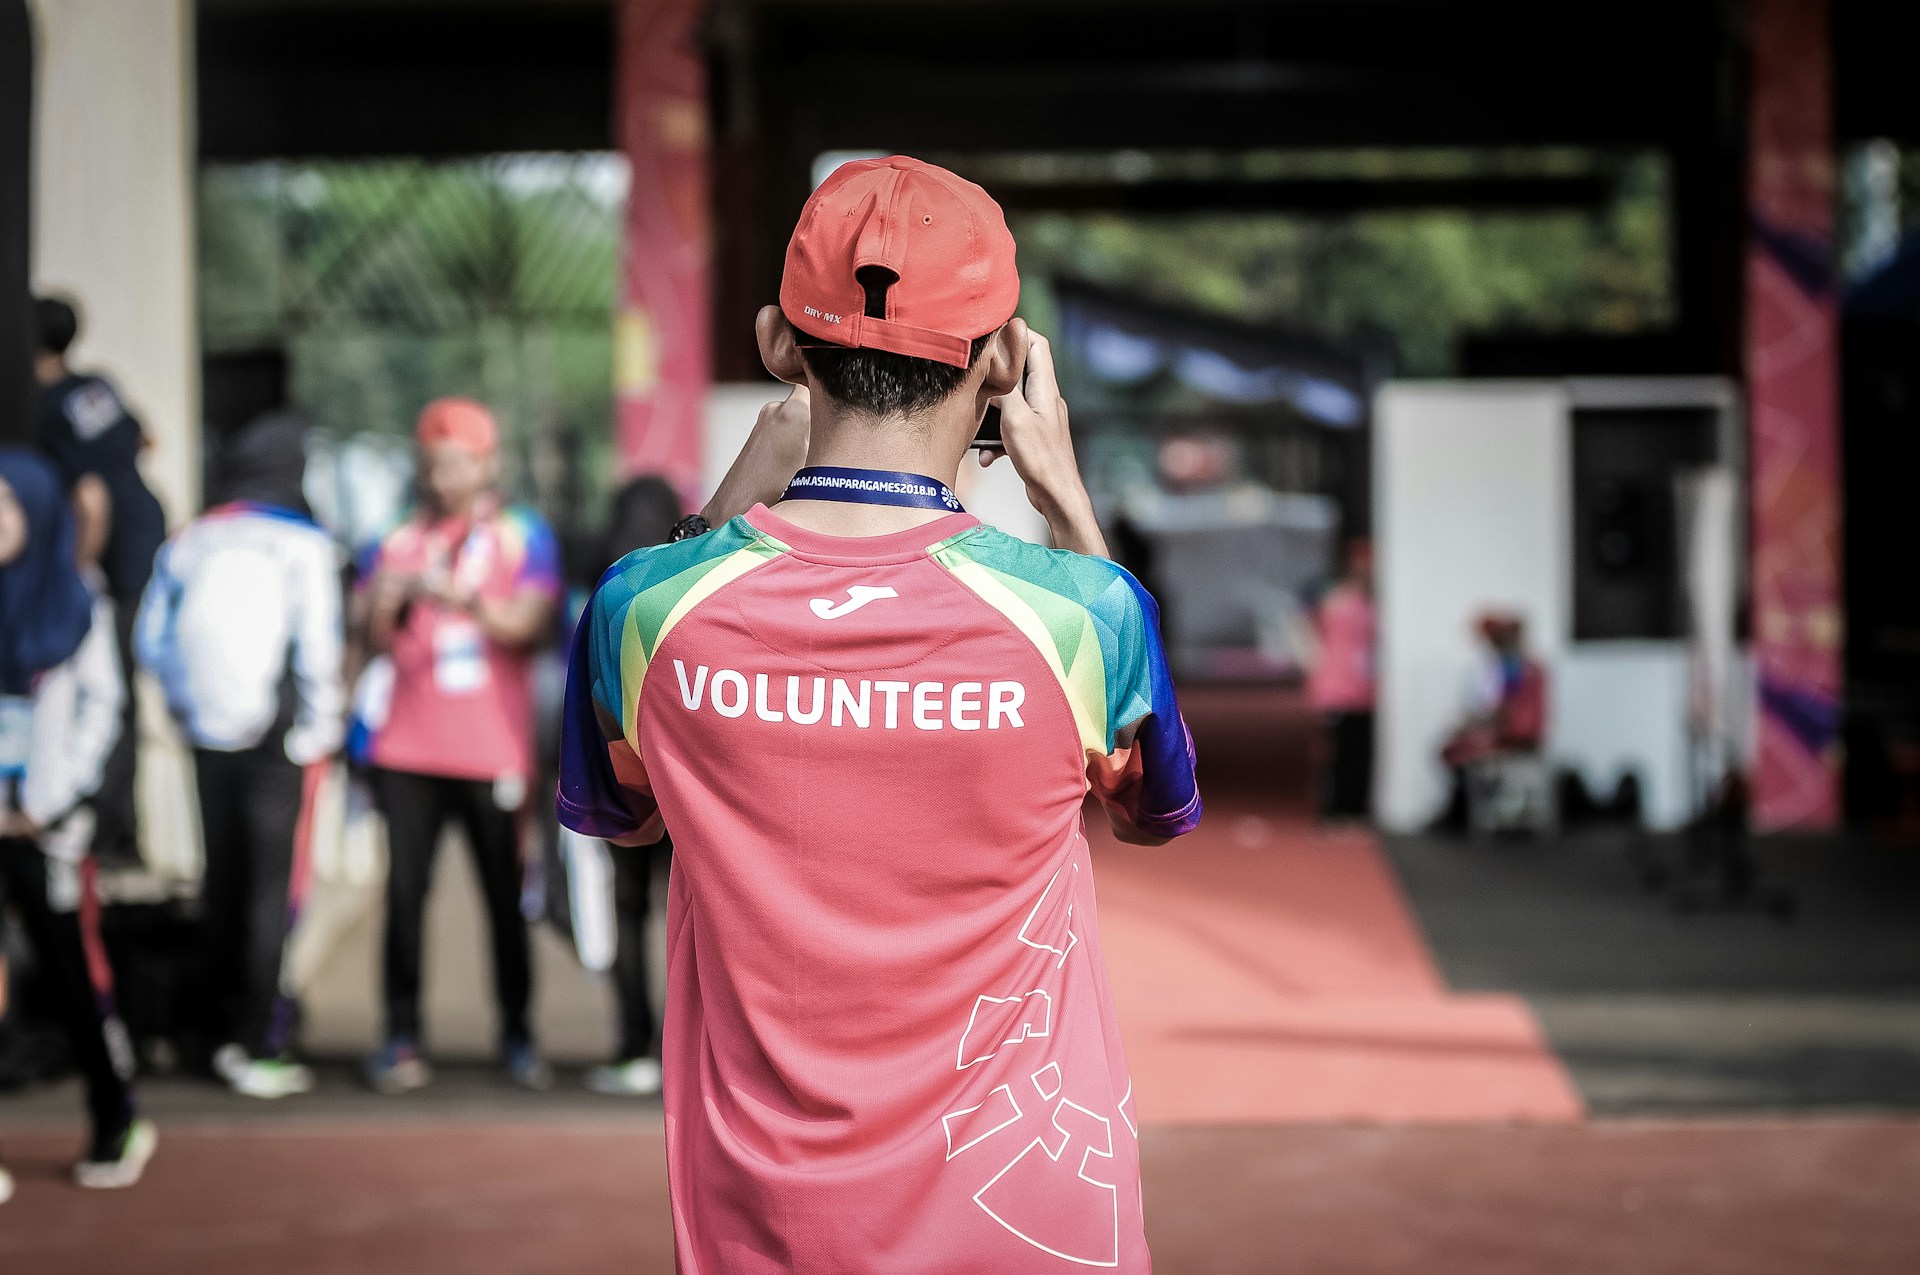 Volunteer worker